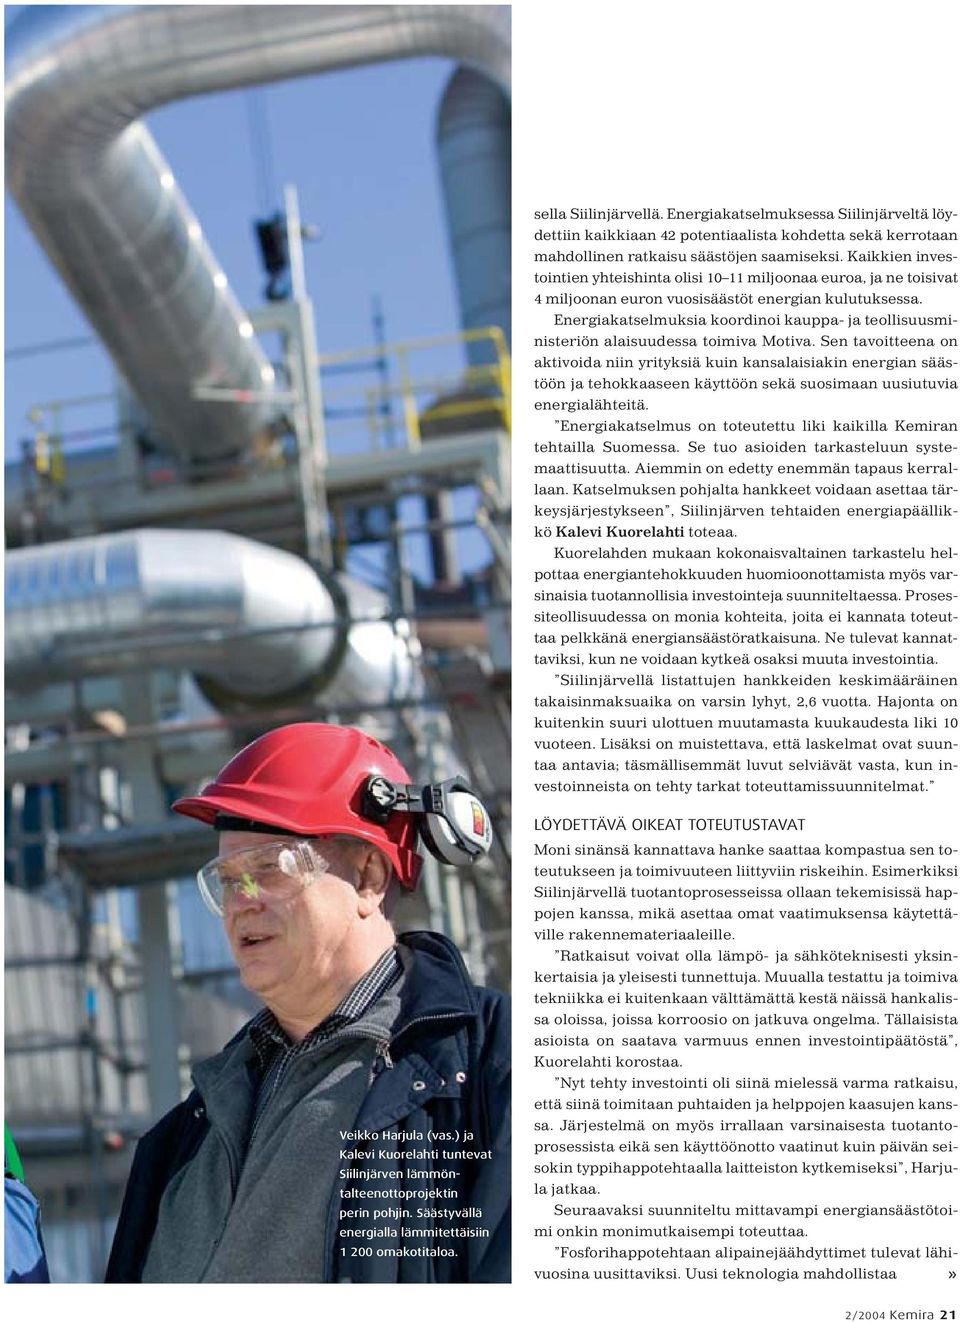 Energiakatselmuksia koordinoi kauppa- ja teollisuusministeriön alaisuudessa toimiva Motiva.